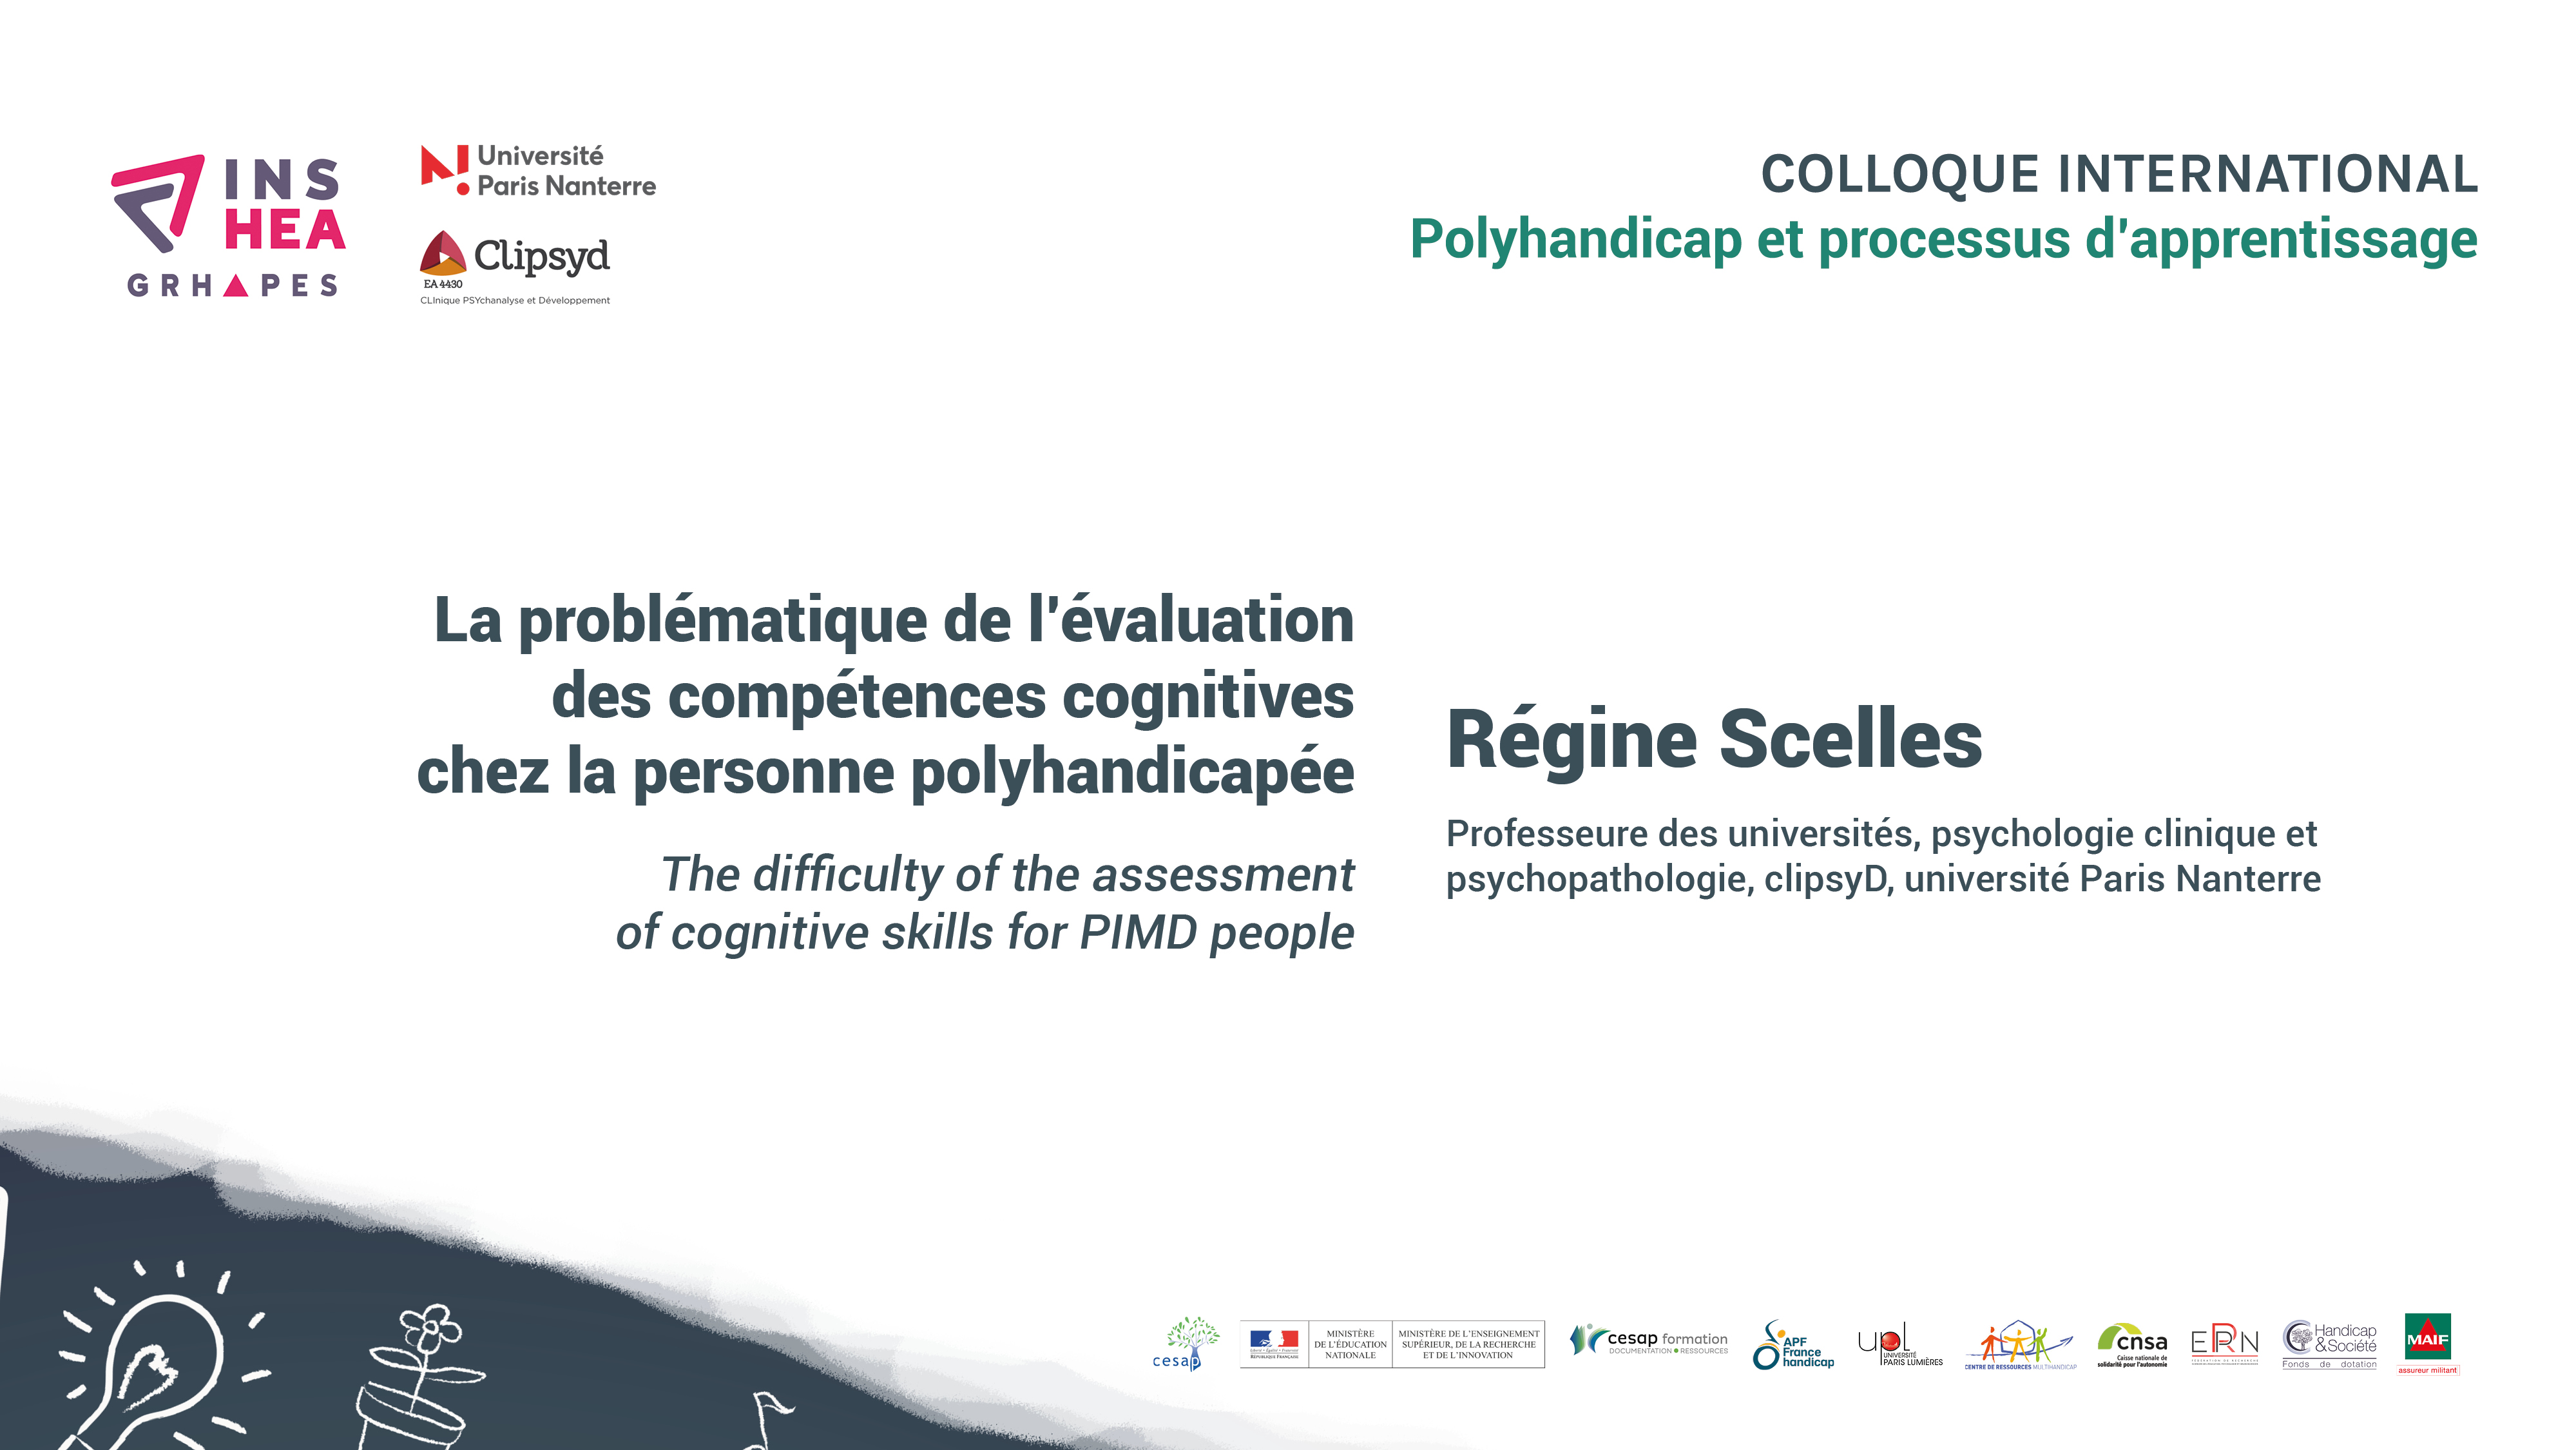 Colloque POLYHANDICAP Régine Scelles « La problématique de l’évaluation des compétences cognitives chez la personne polyhandicapée »,